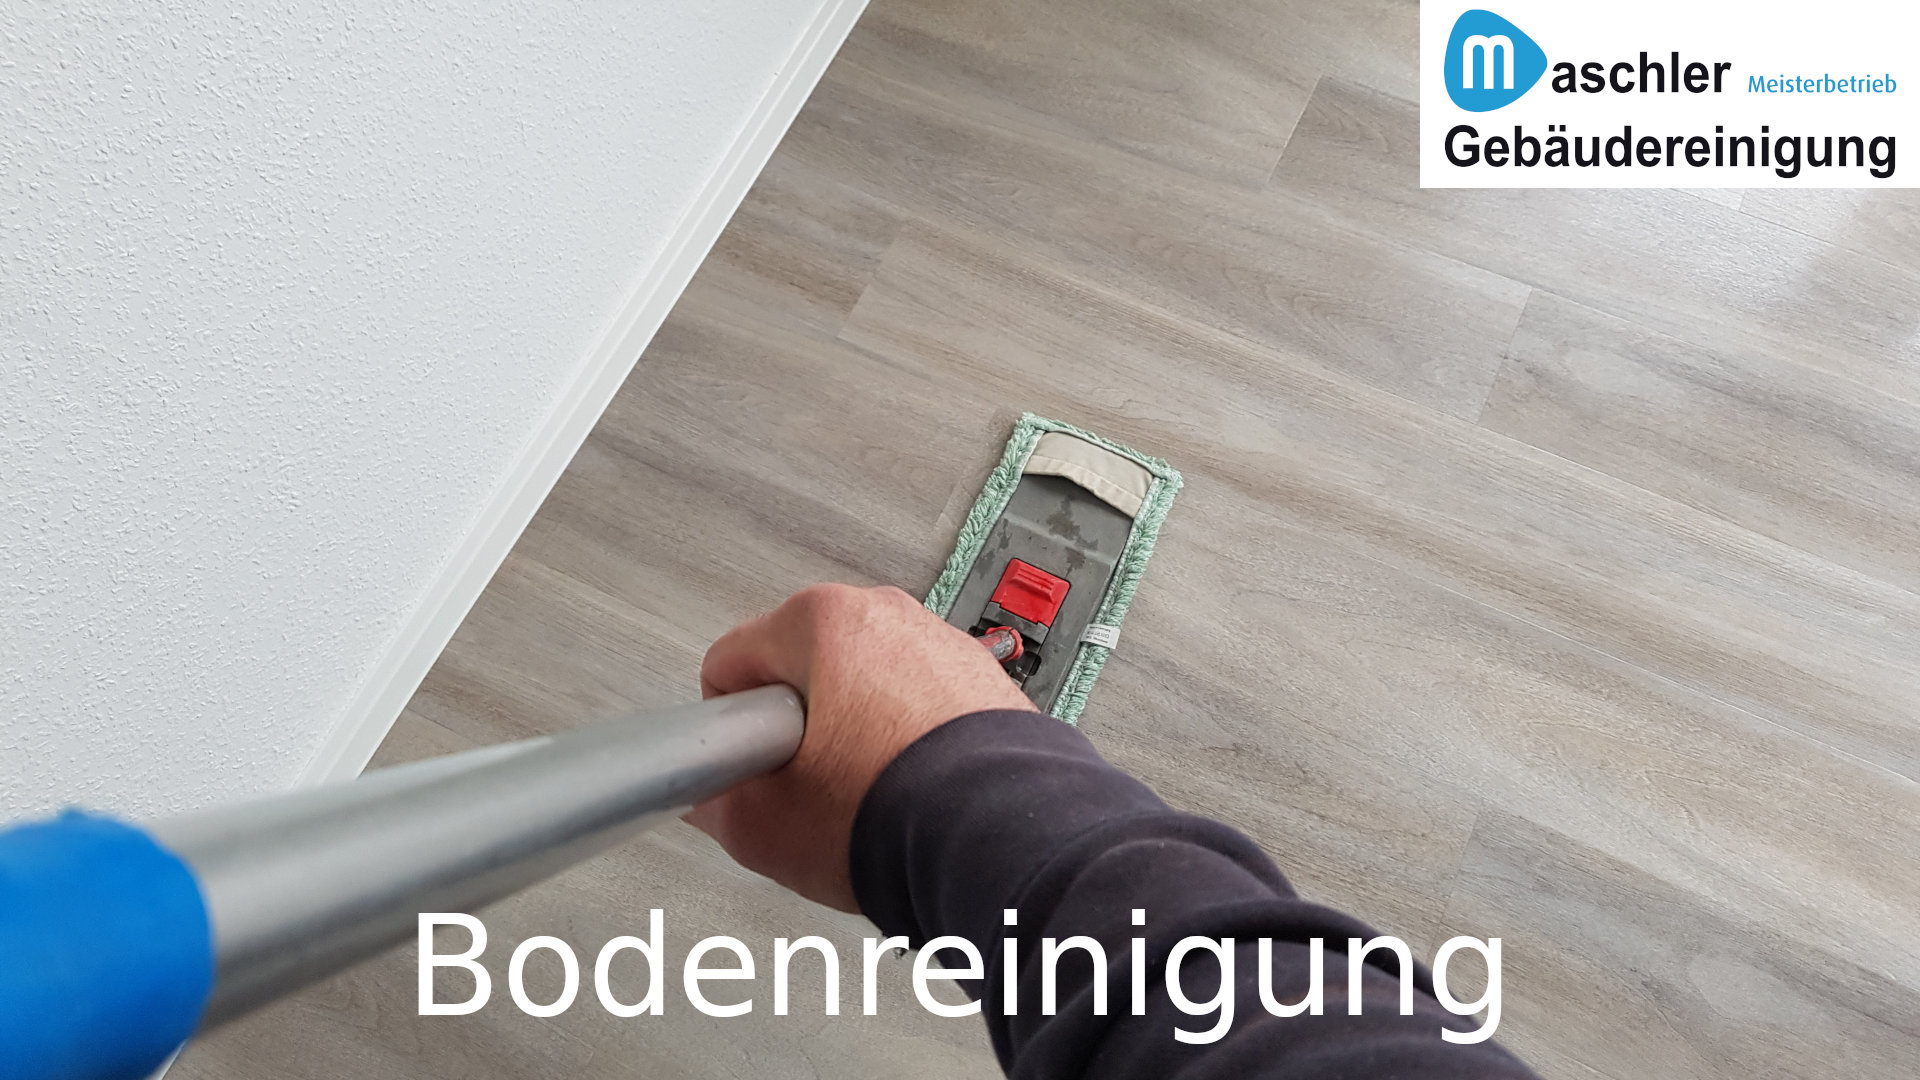 Bodenreinigung - Gebäudereinigung Maschler GmbH